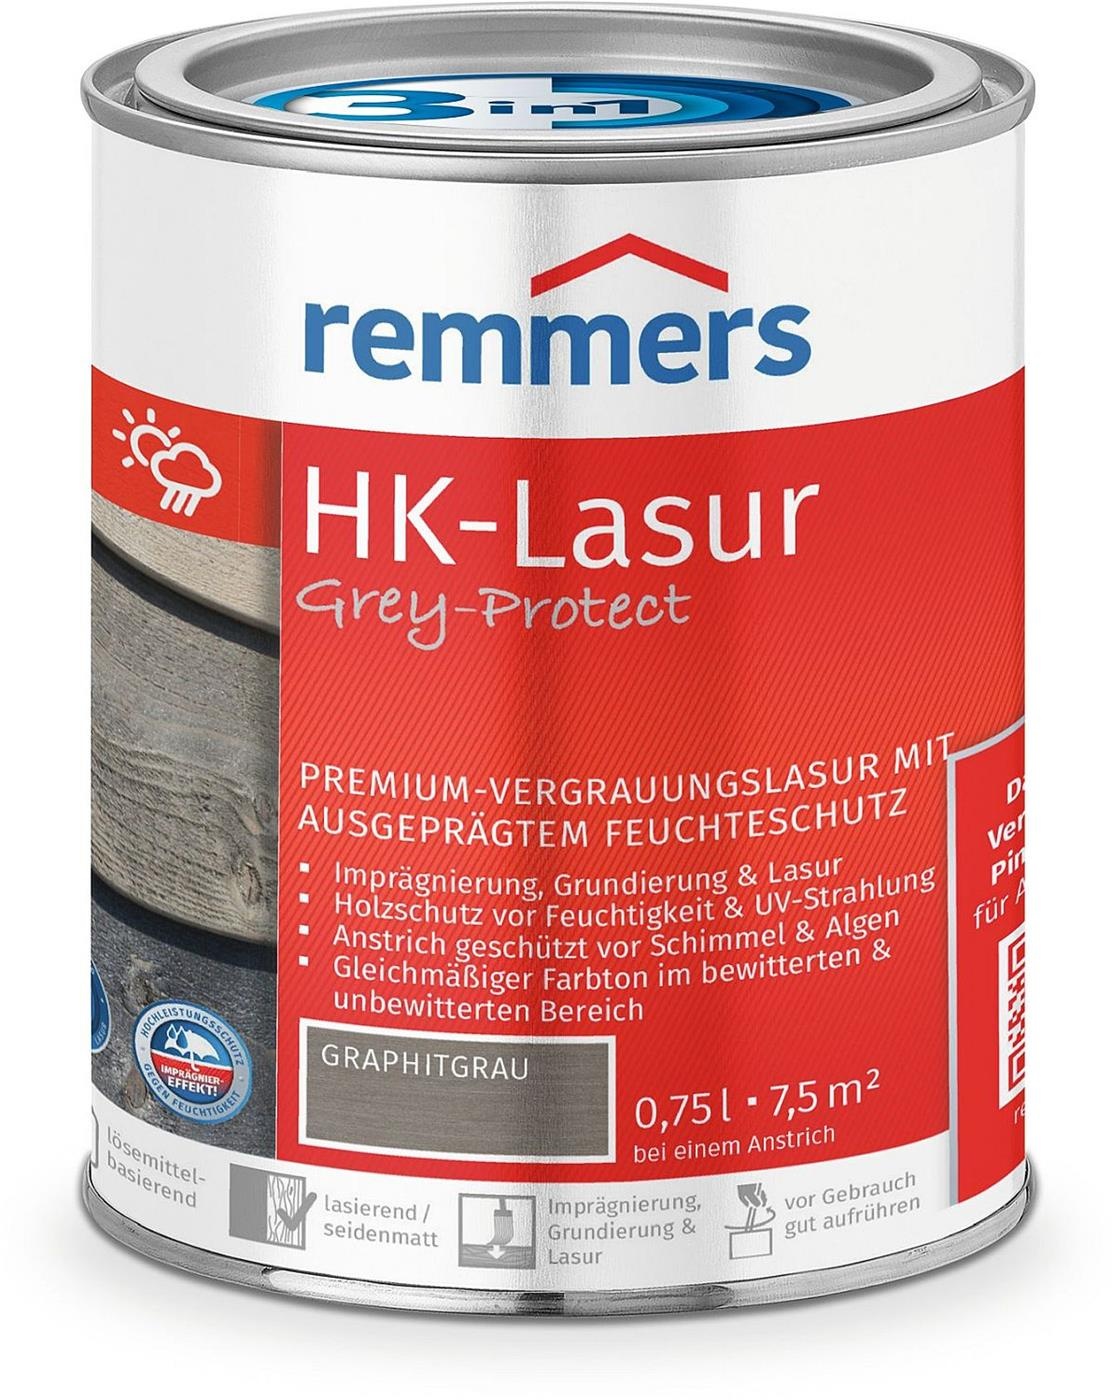 remmers hk-lasur grey-protect